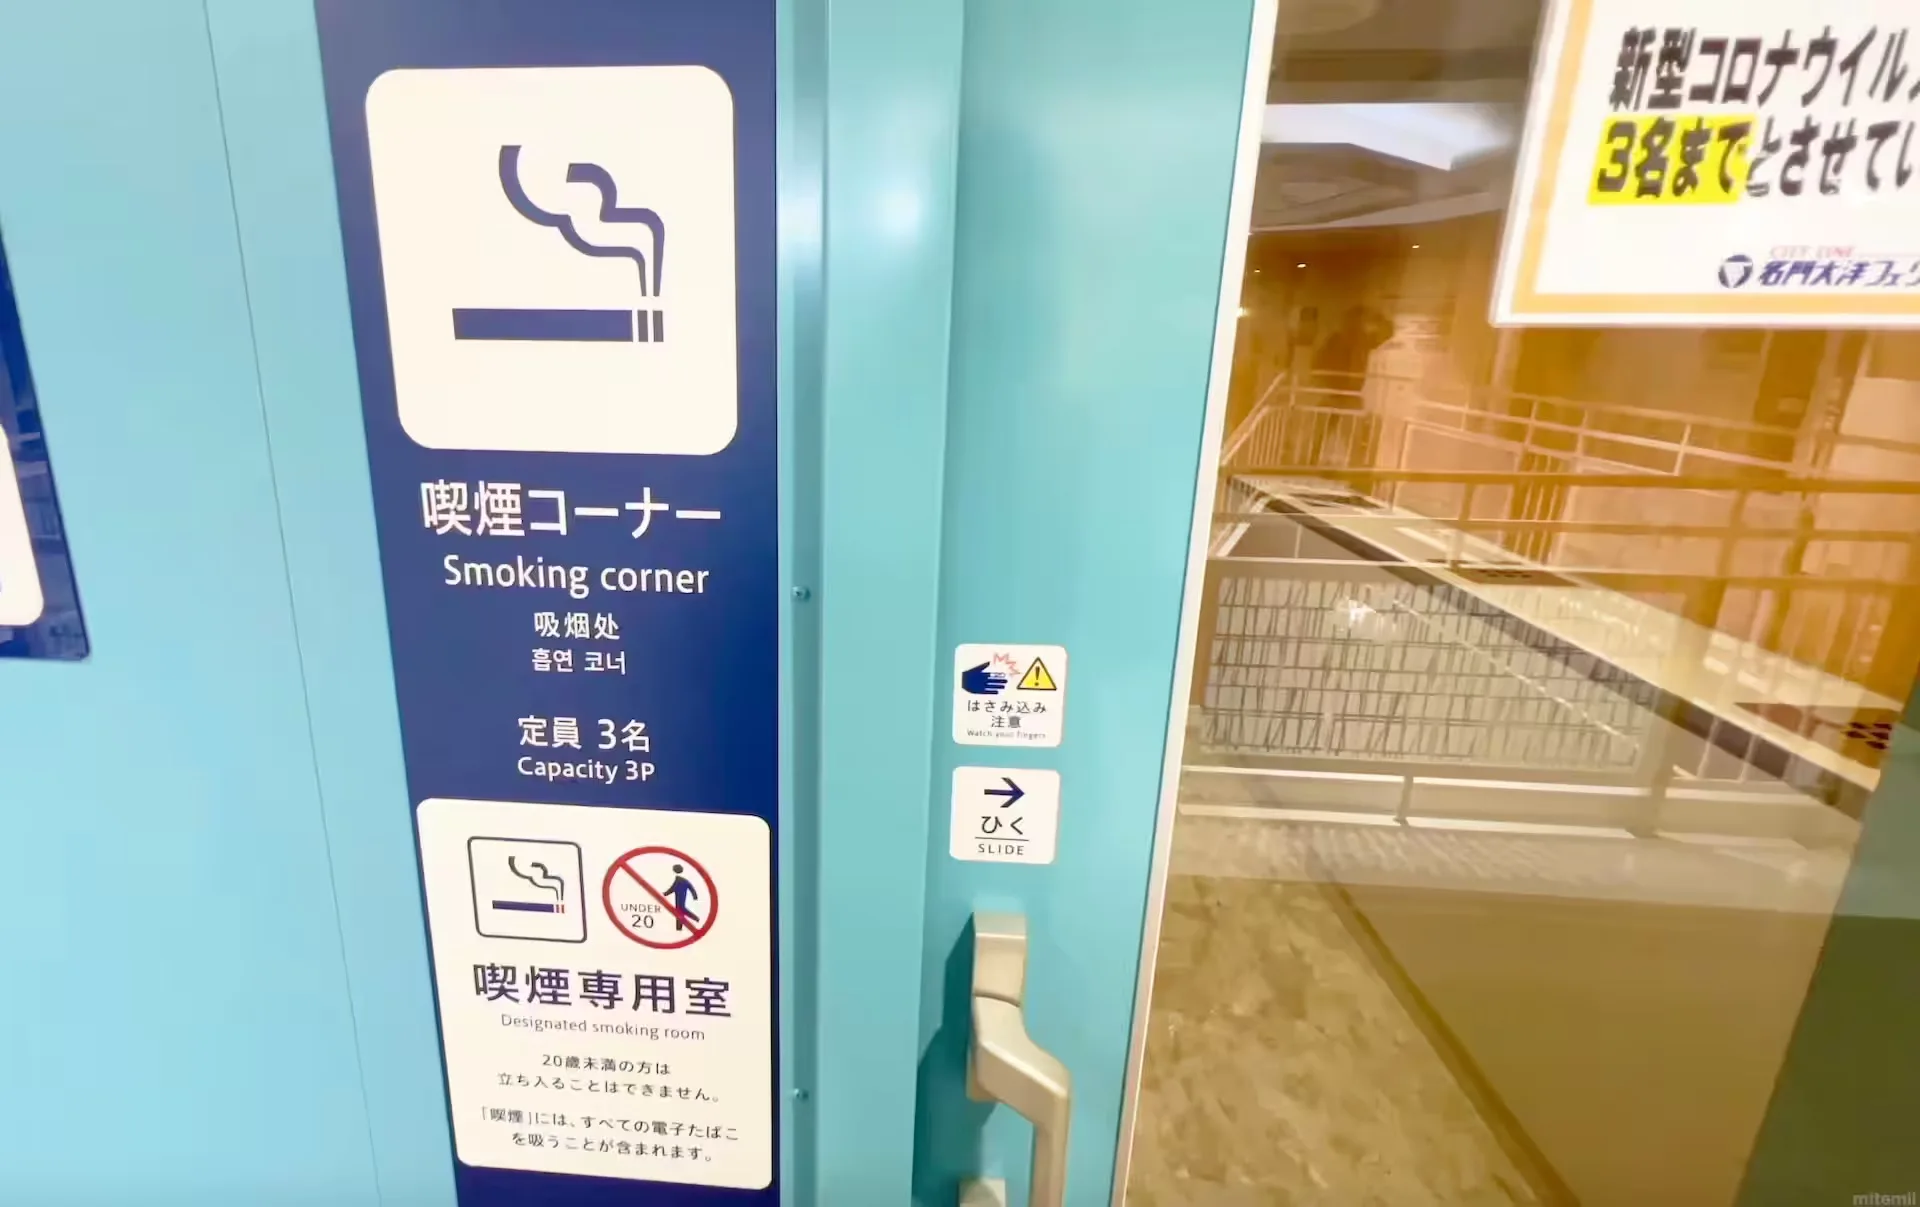 名门大洋渡轮福冈号上的吸烟区